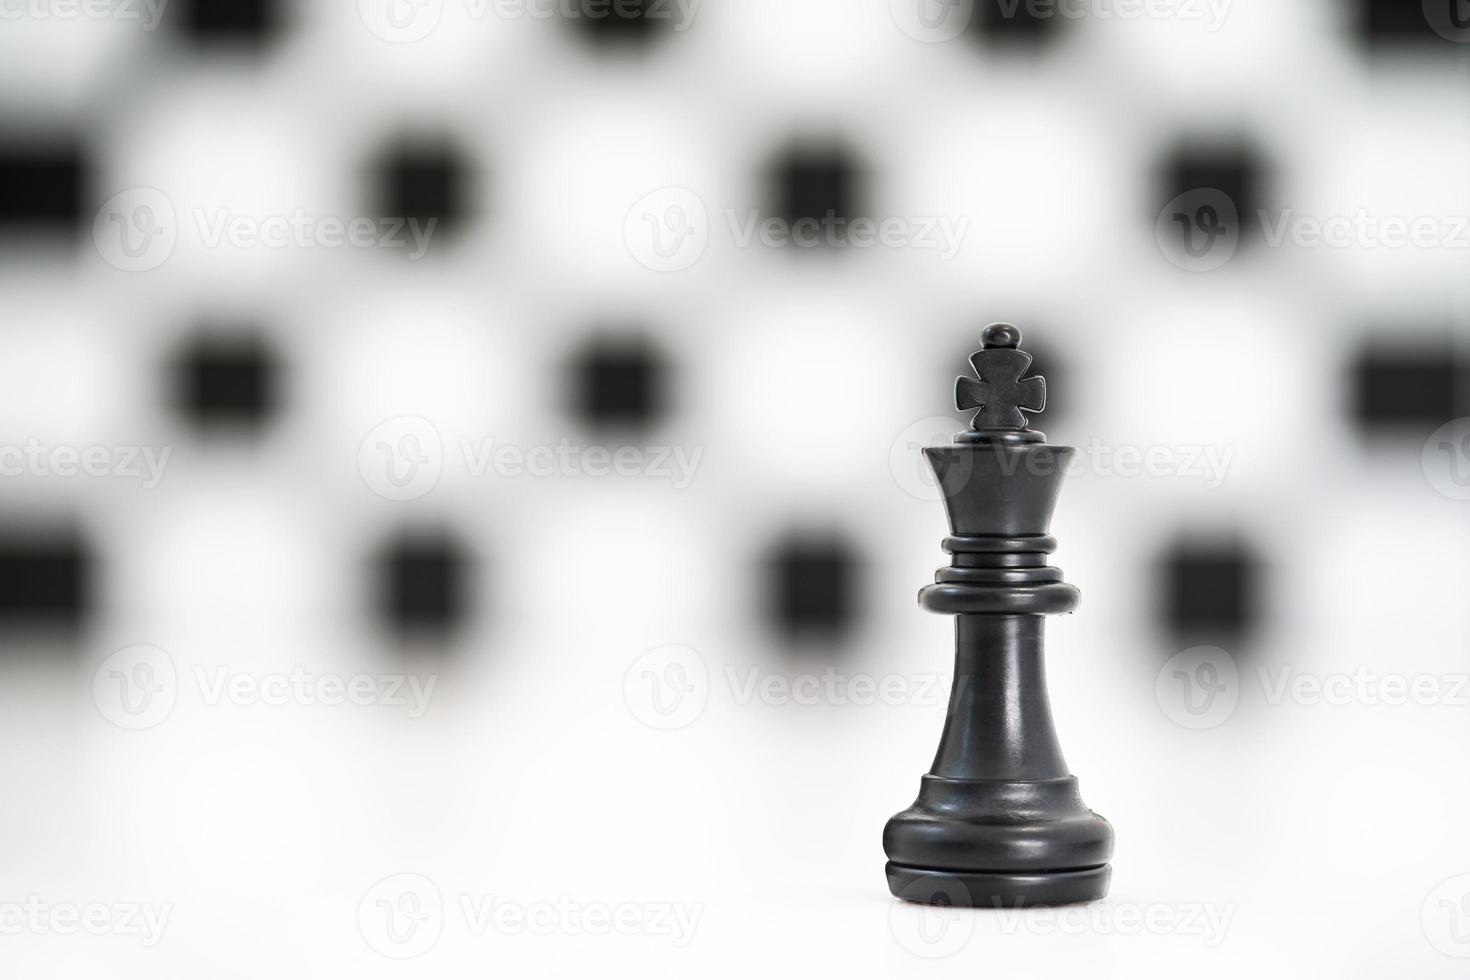 juego de piezas de ajedrez negras sobre fondo blanco foto